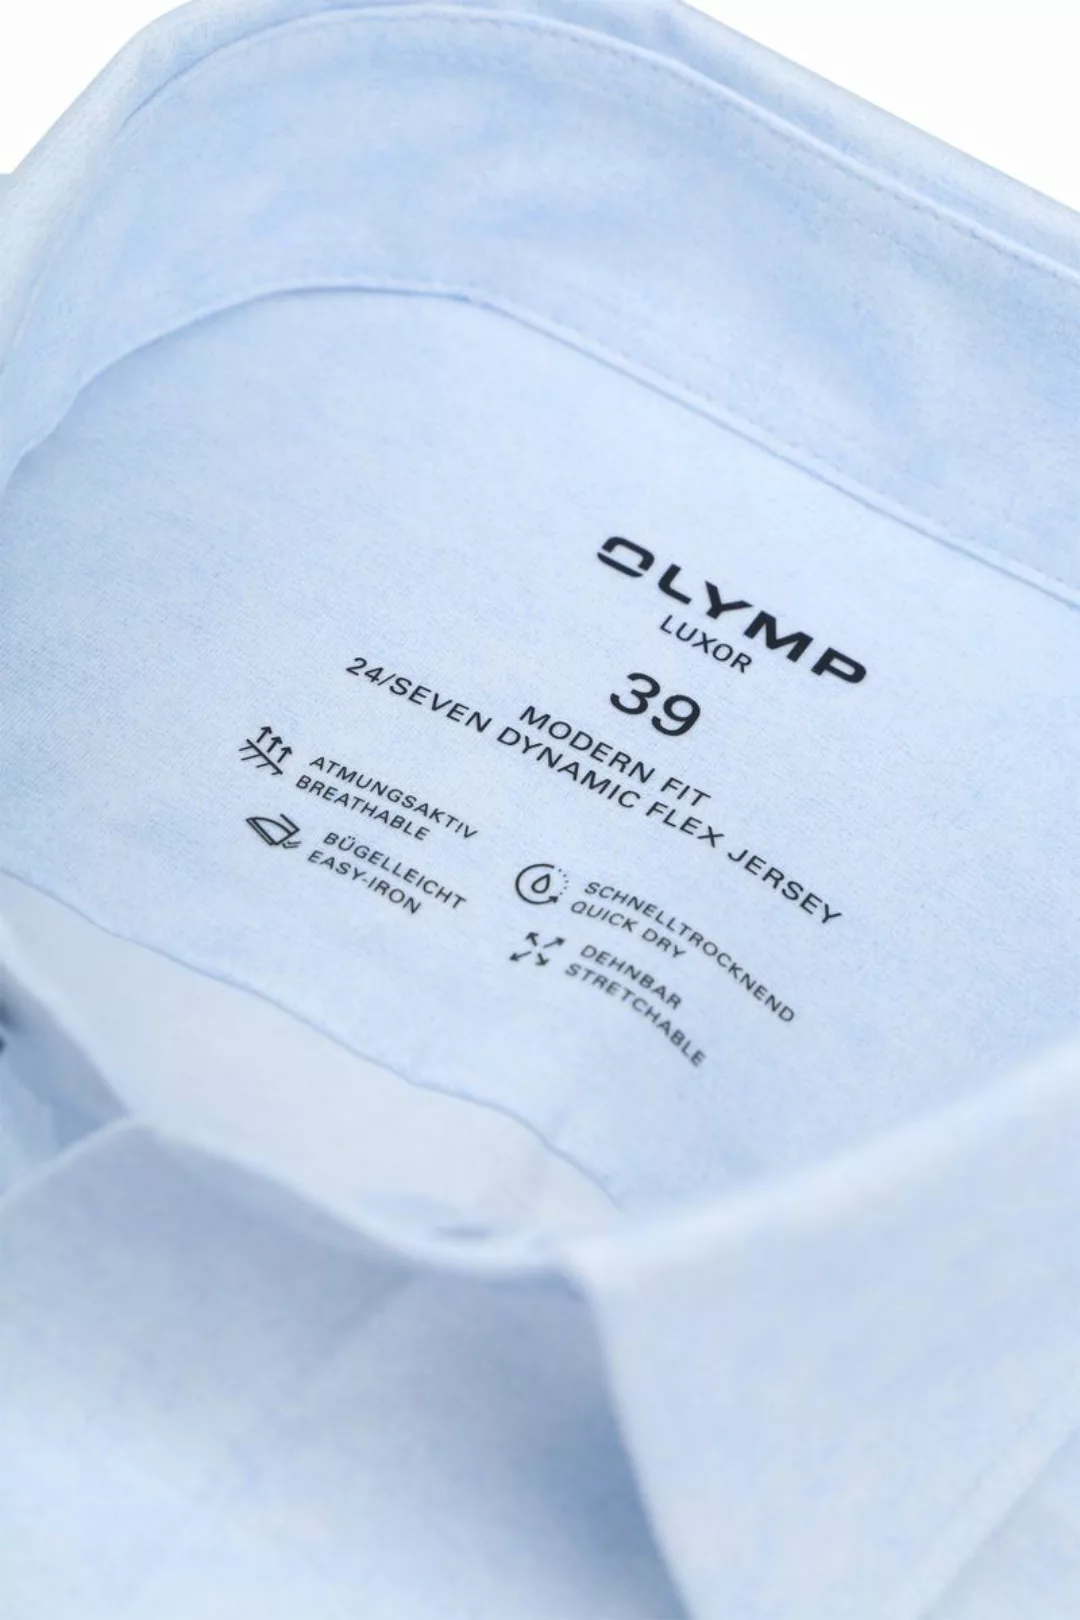 OLYMP Luxor Hemd Stretch Hellblau  - Größe 39 günstig online kaufen